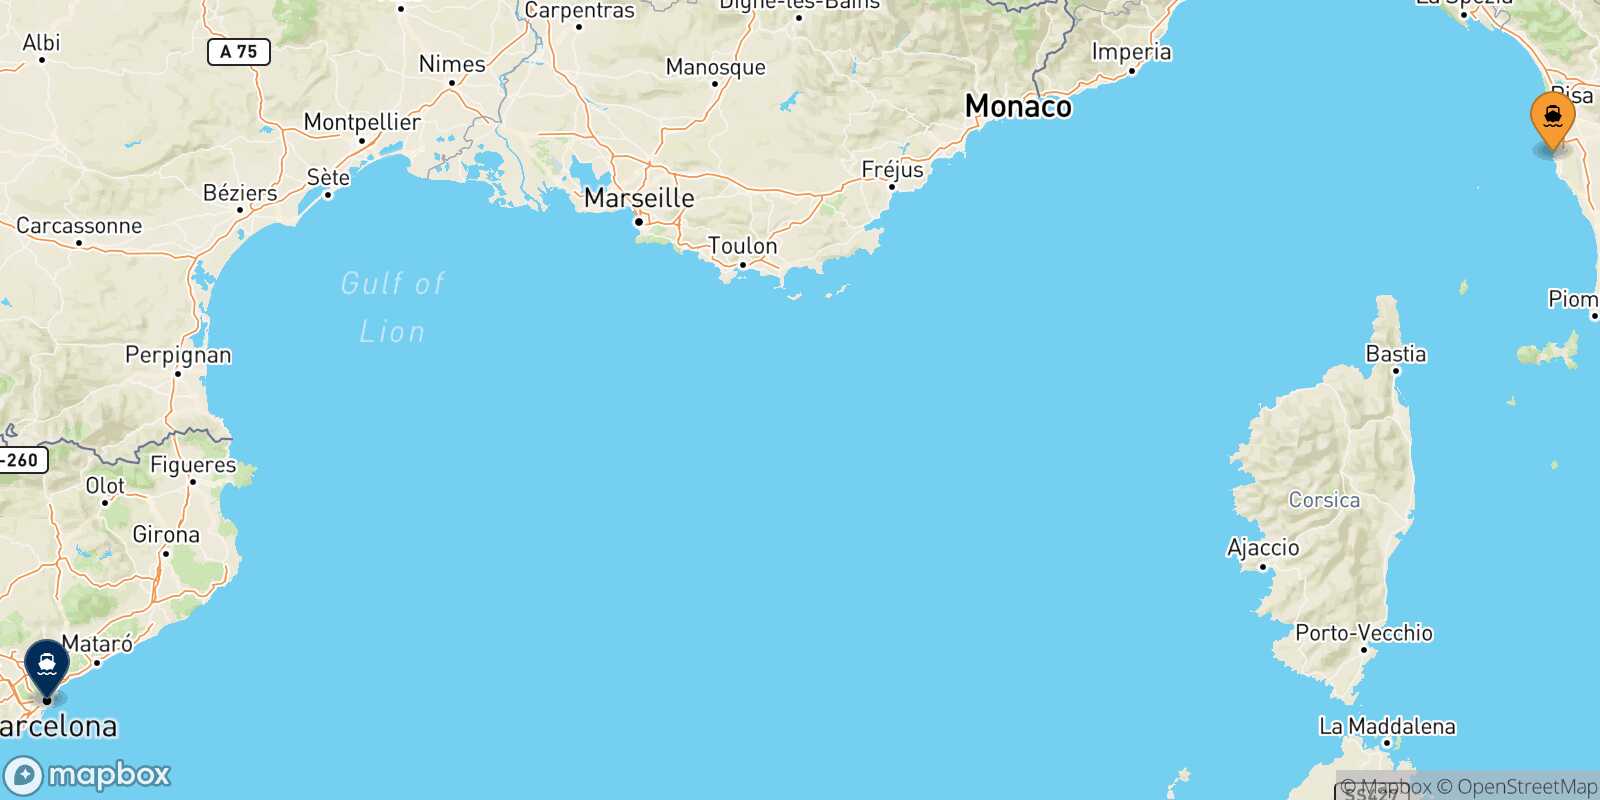 Mappa delle destinazioni raggiungibili da Livorno